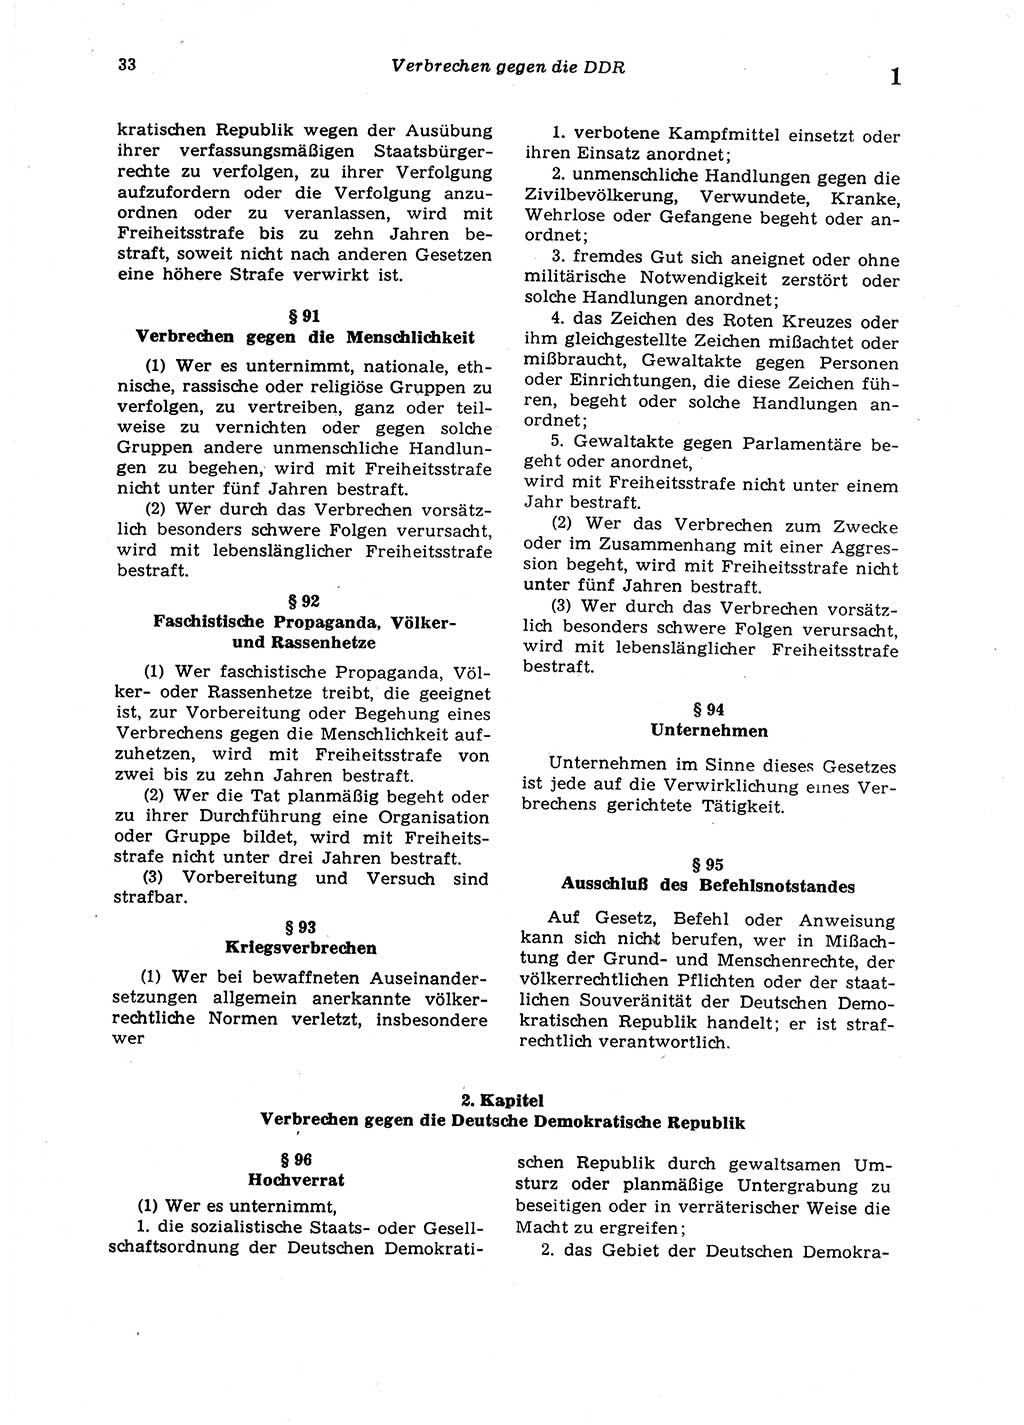 Strafgesetzbuch (StGB) der Deutschen Demokratischen Republik (DDR) 1987, Seite 33 (StGB DDR 1987, S. 33)